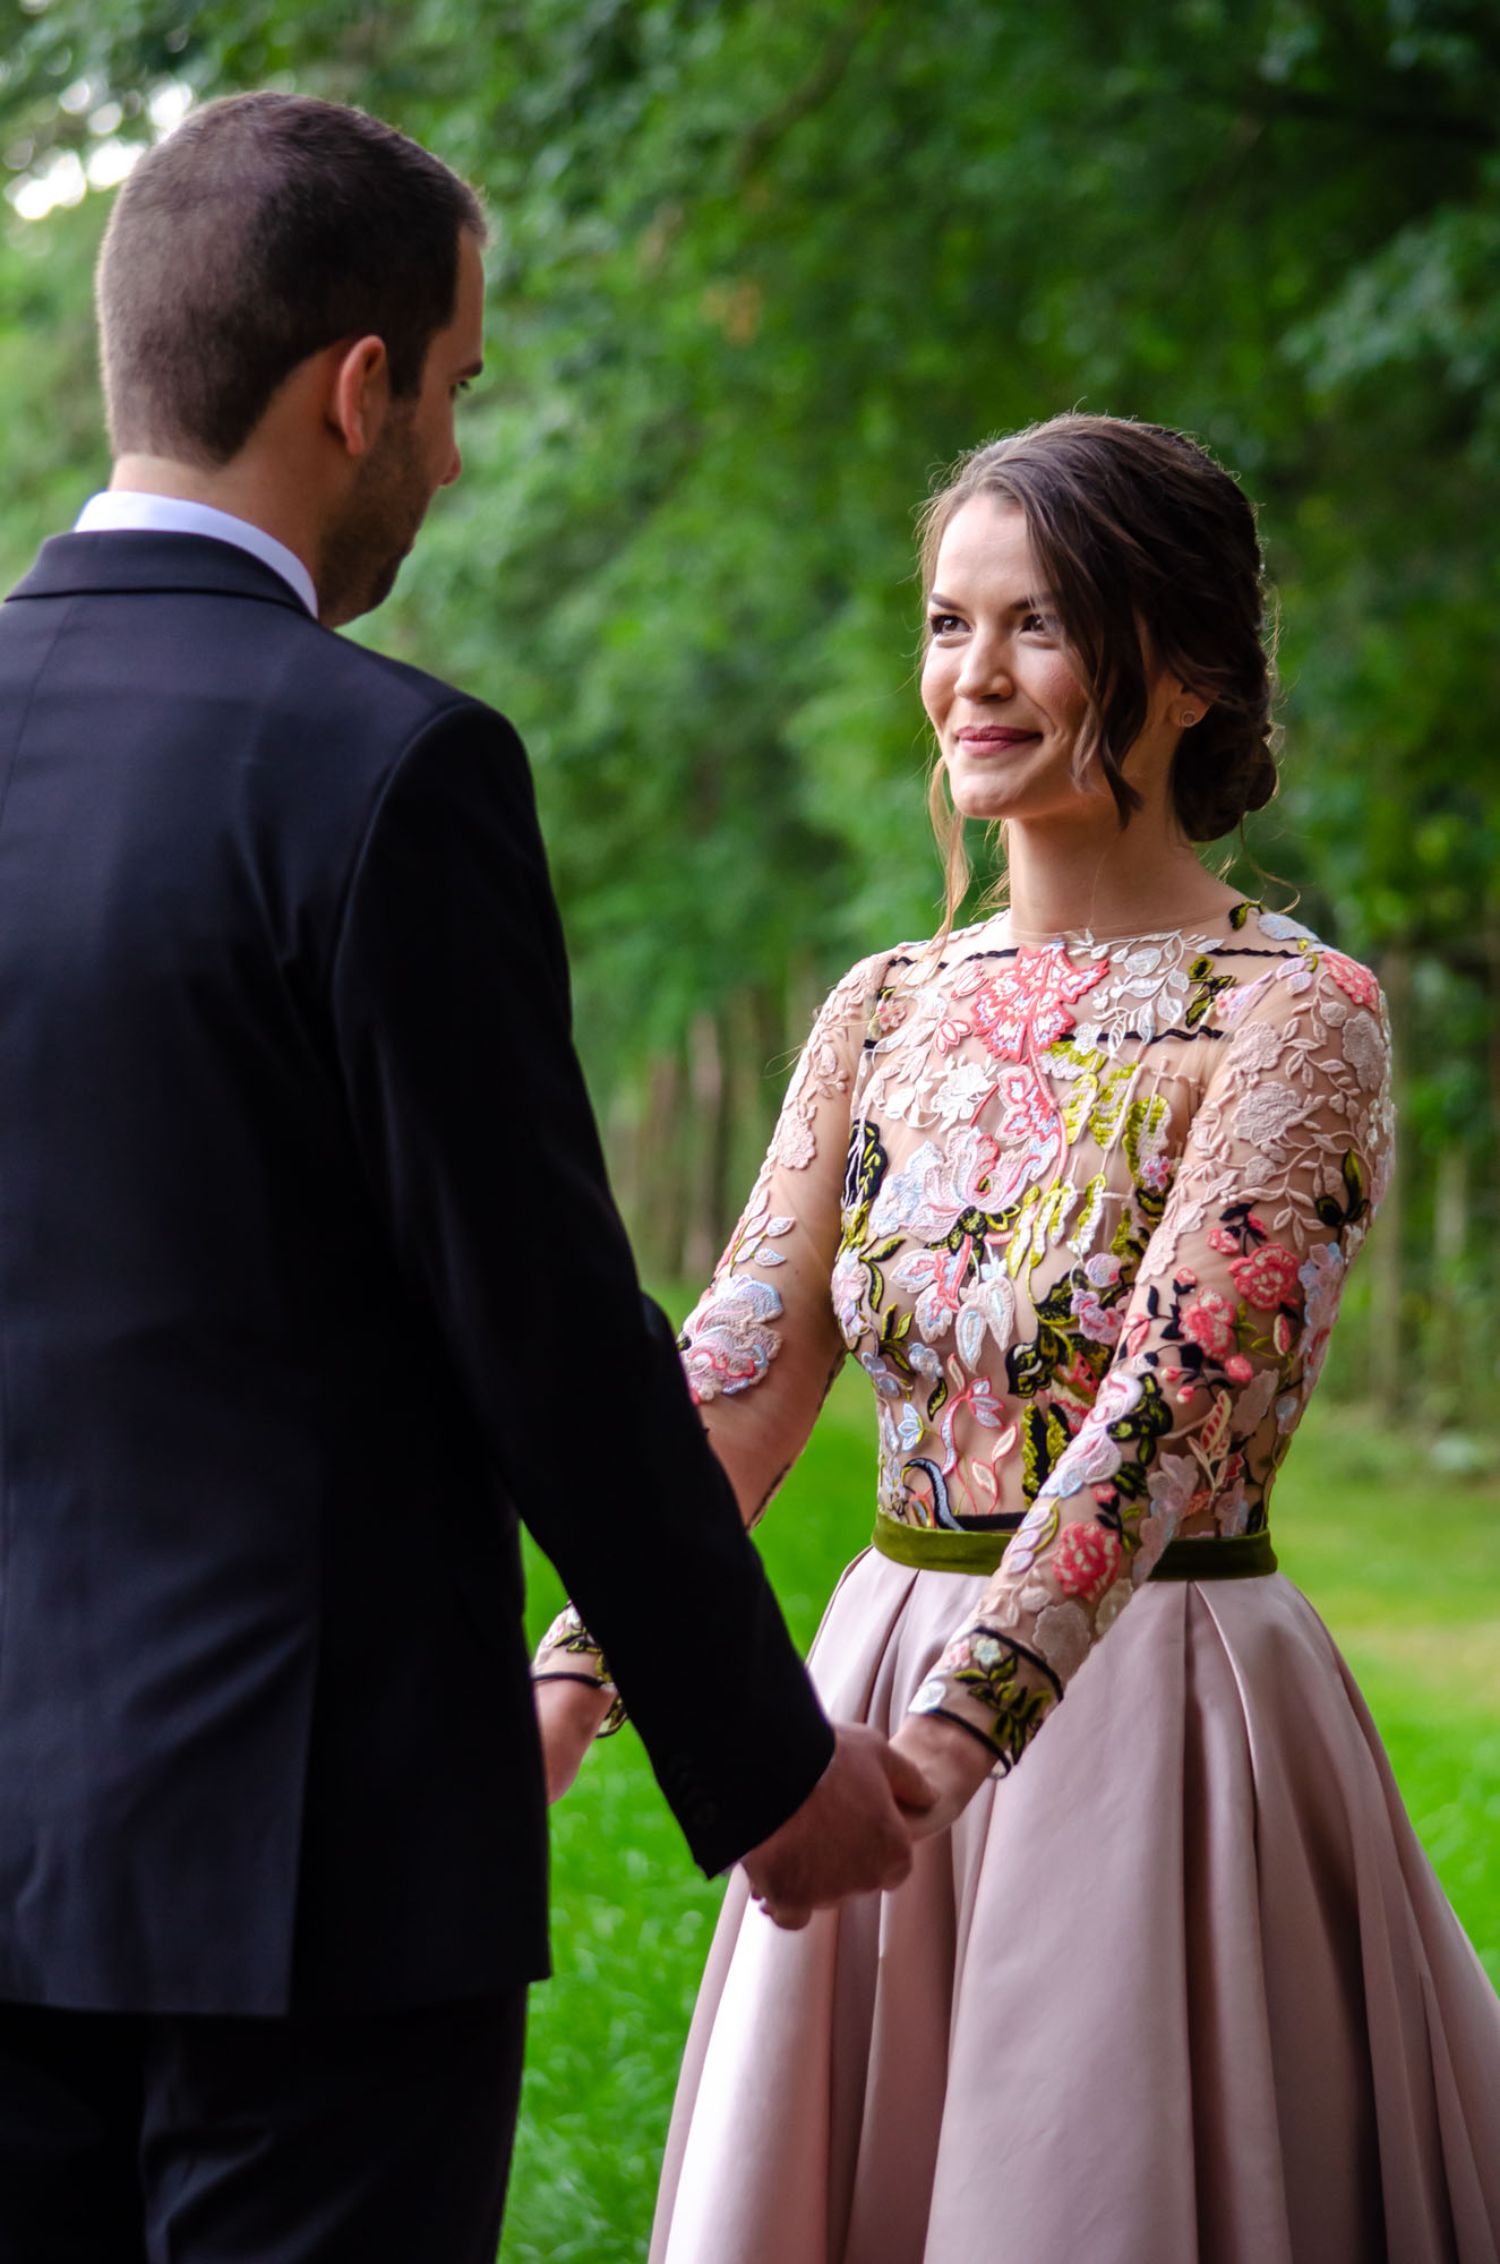 Eszter és a gyönyörű, színes virágos esküvői ruha